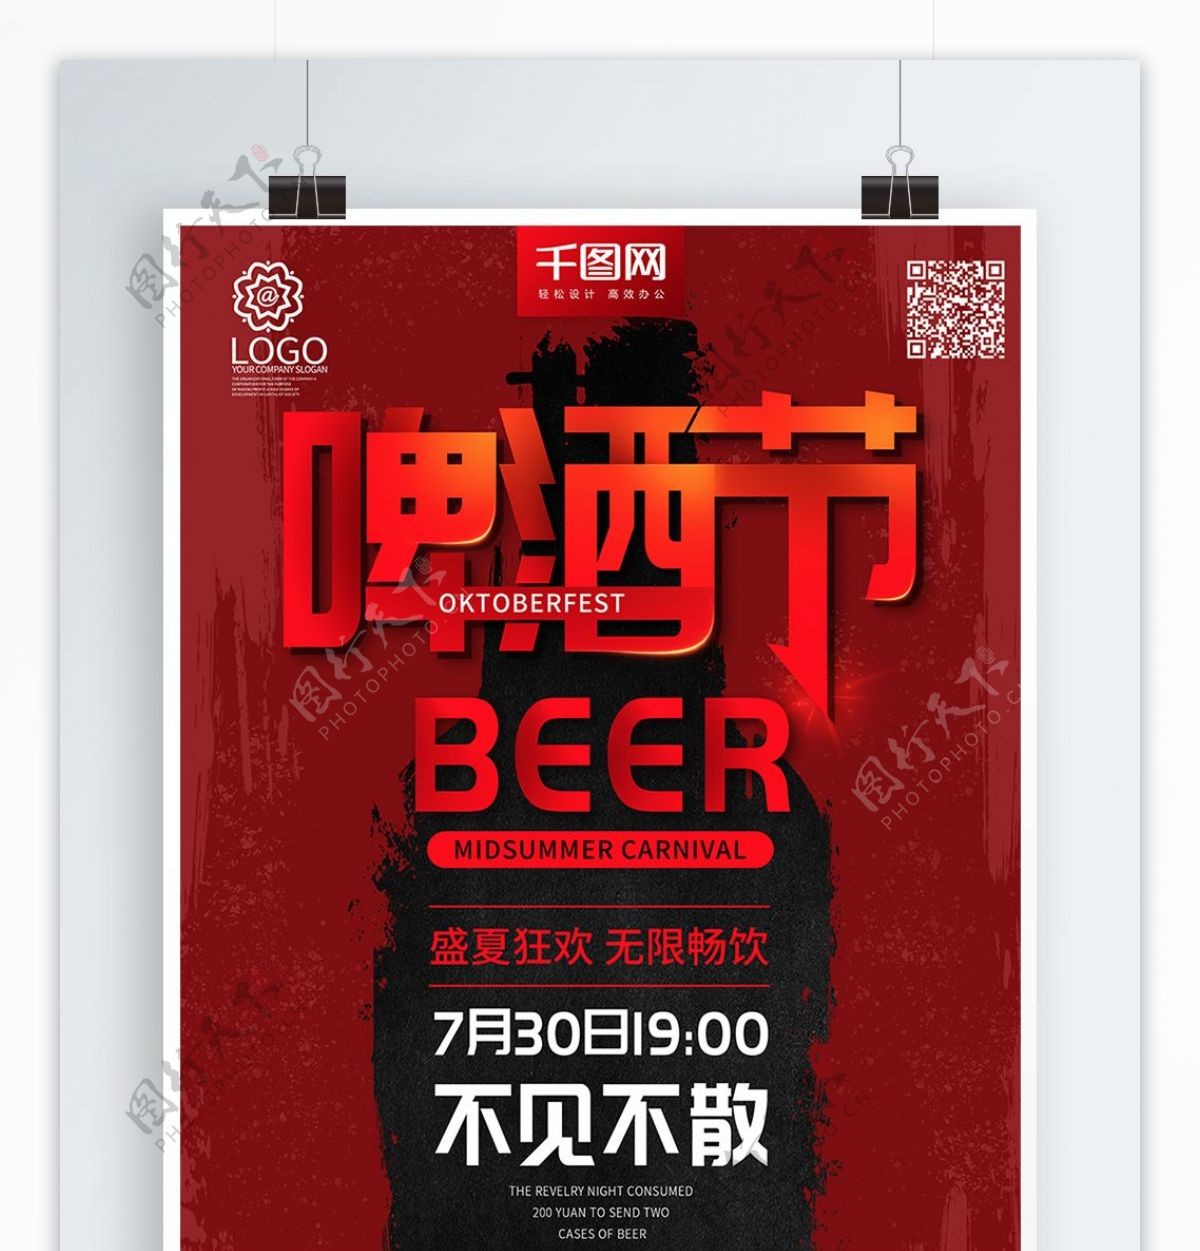 红色大气复古啤酒节促销海报